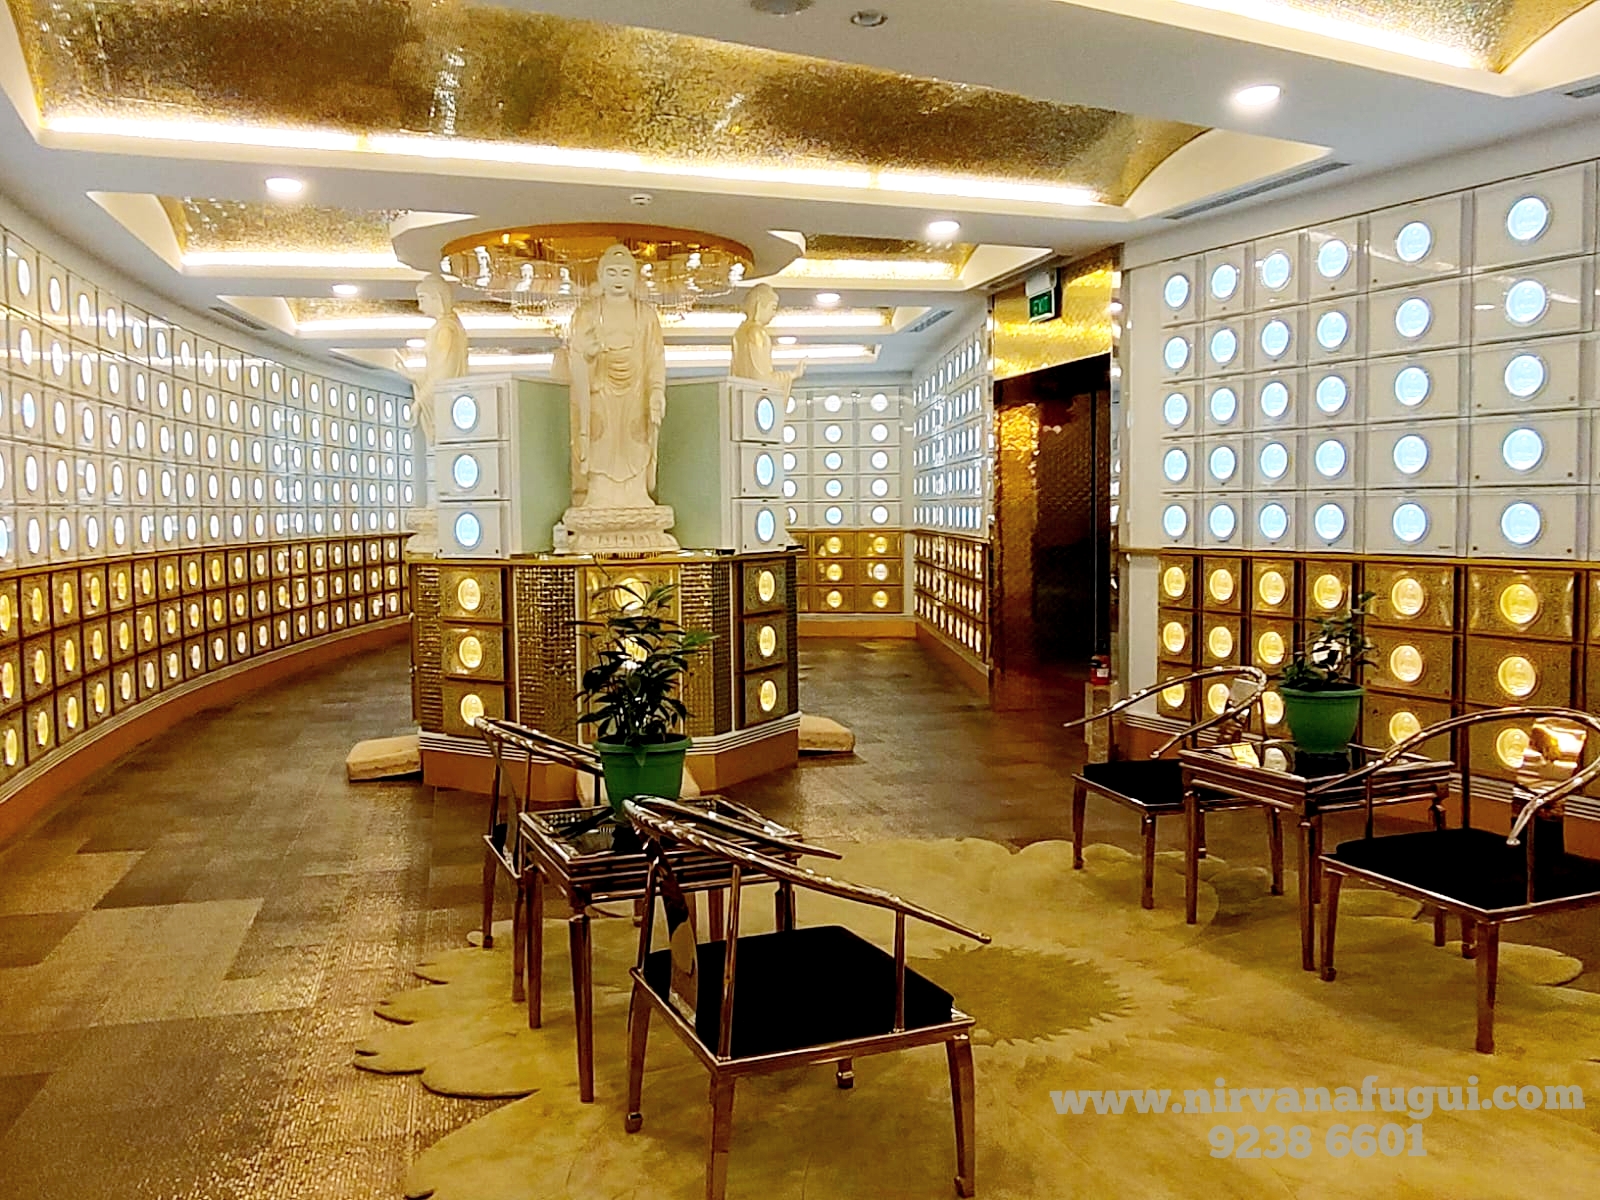 Temple Columbarium | Best chinese temple columbarium in Singapore